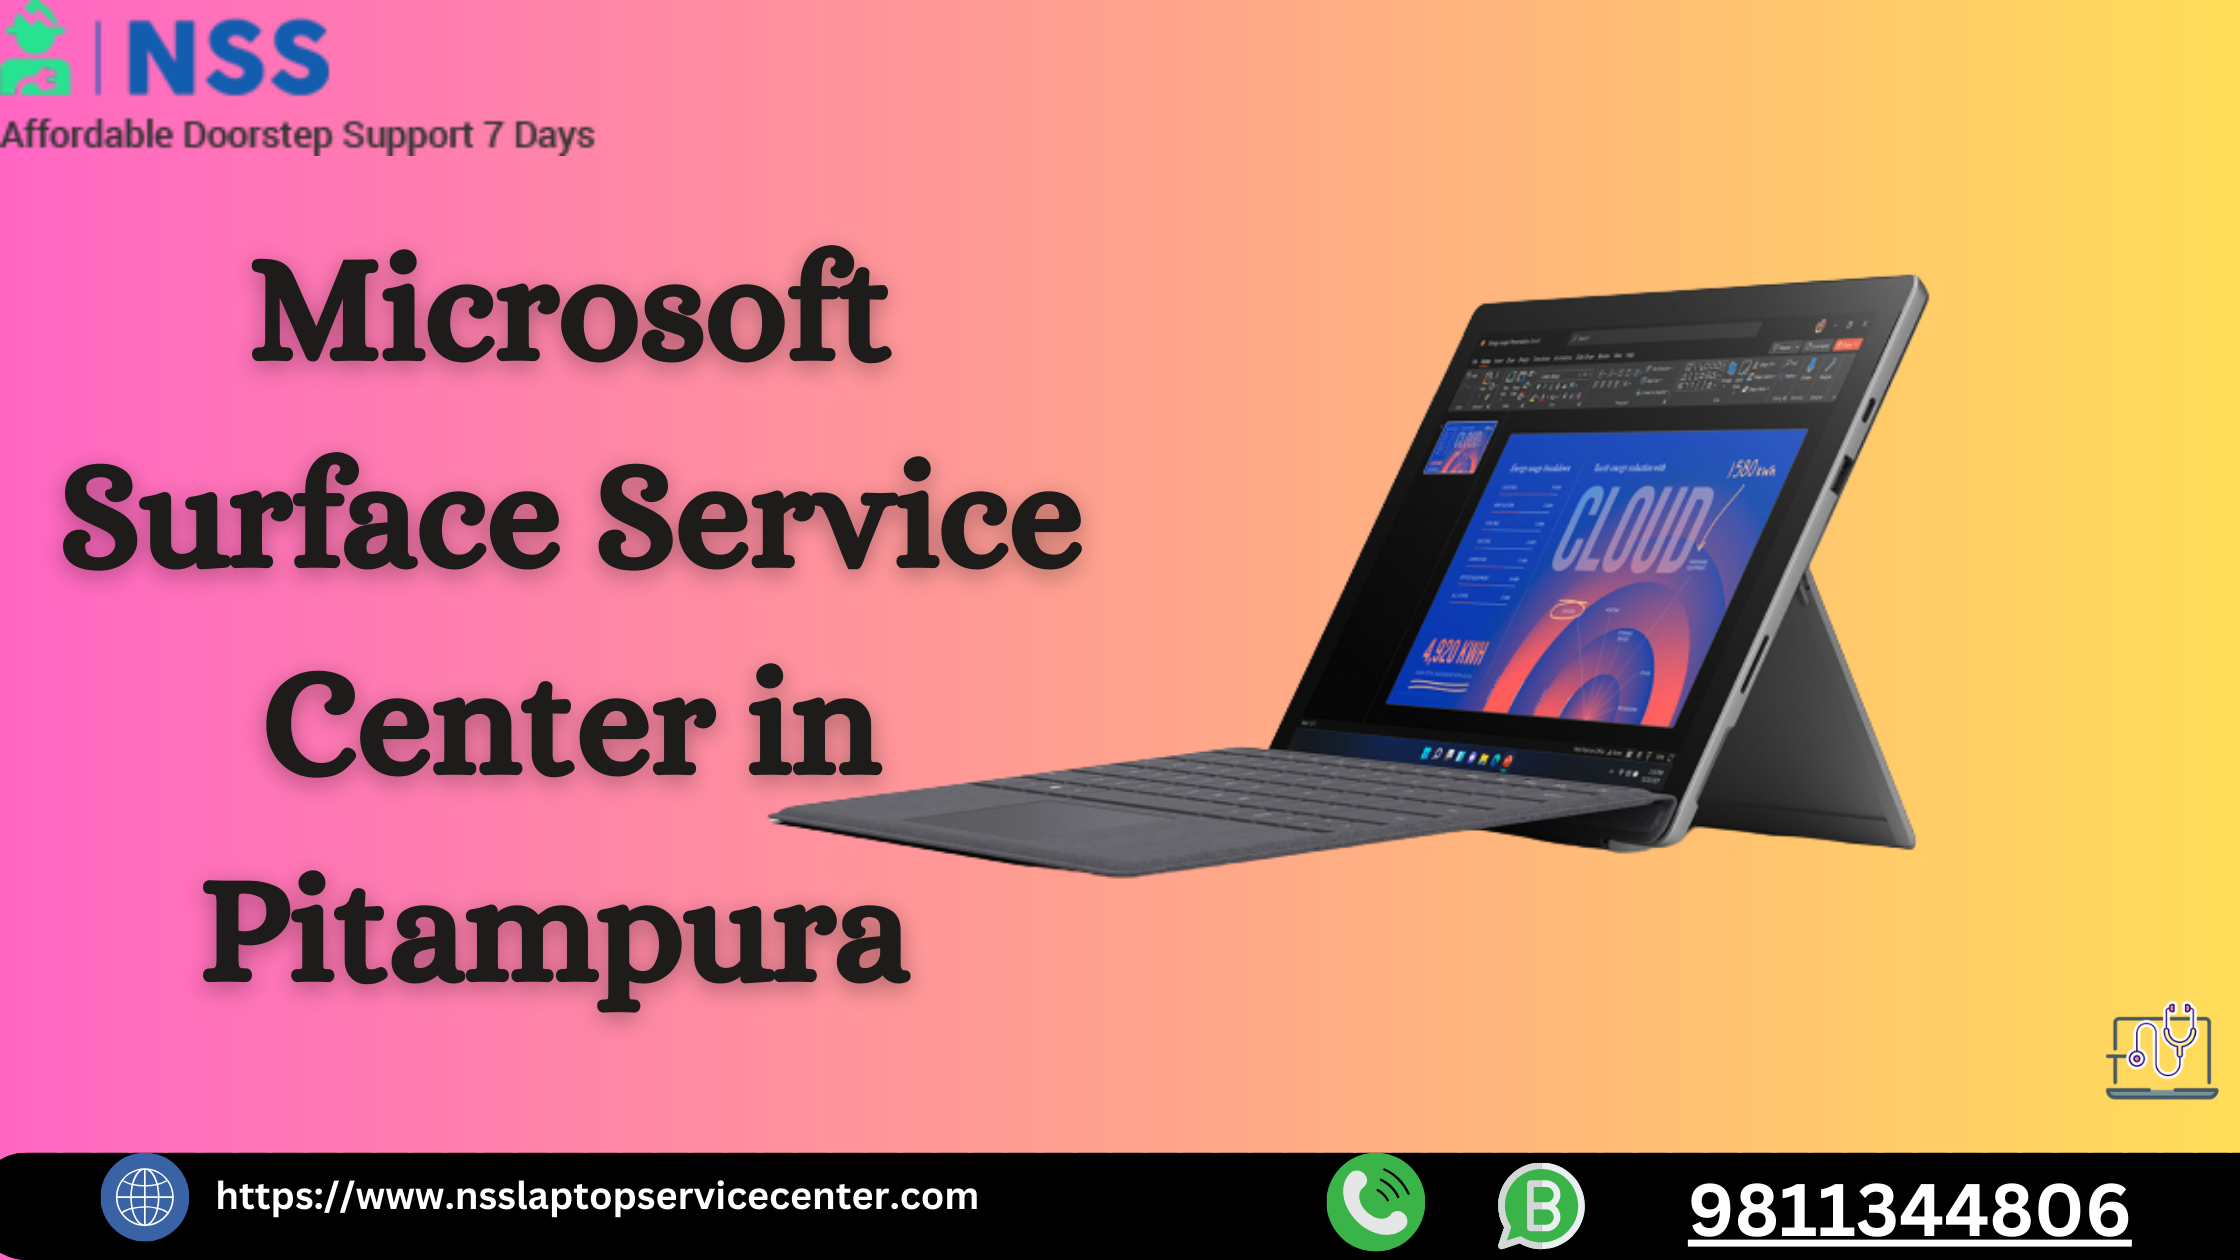 Microsoft Service Center in Pitampura Near Delhi